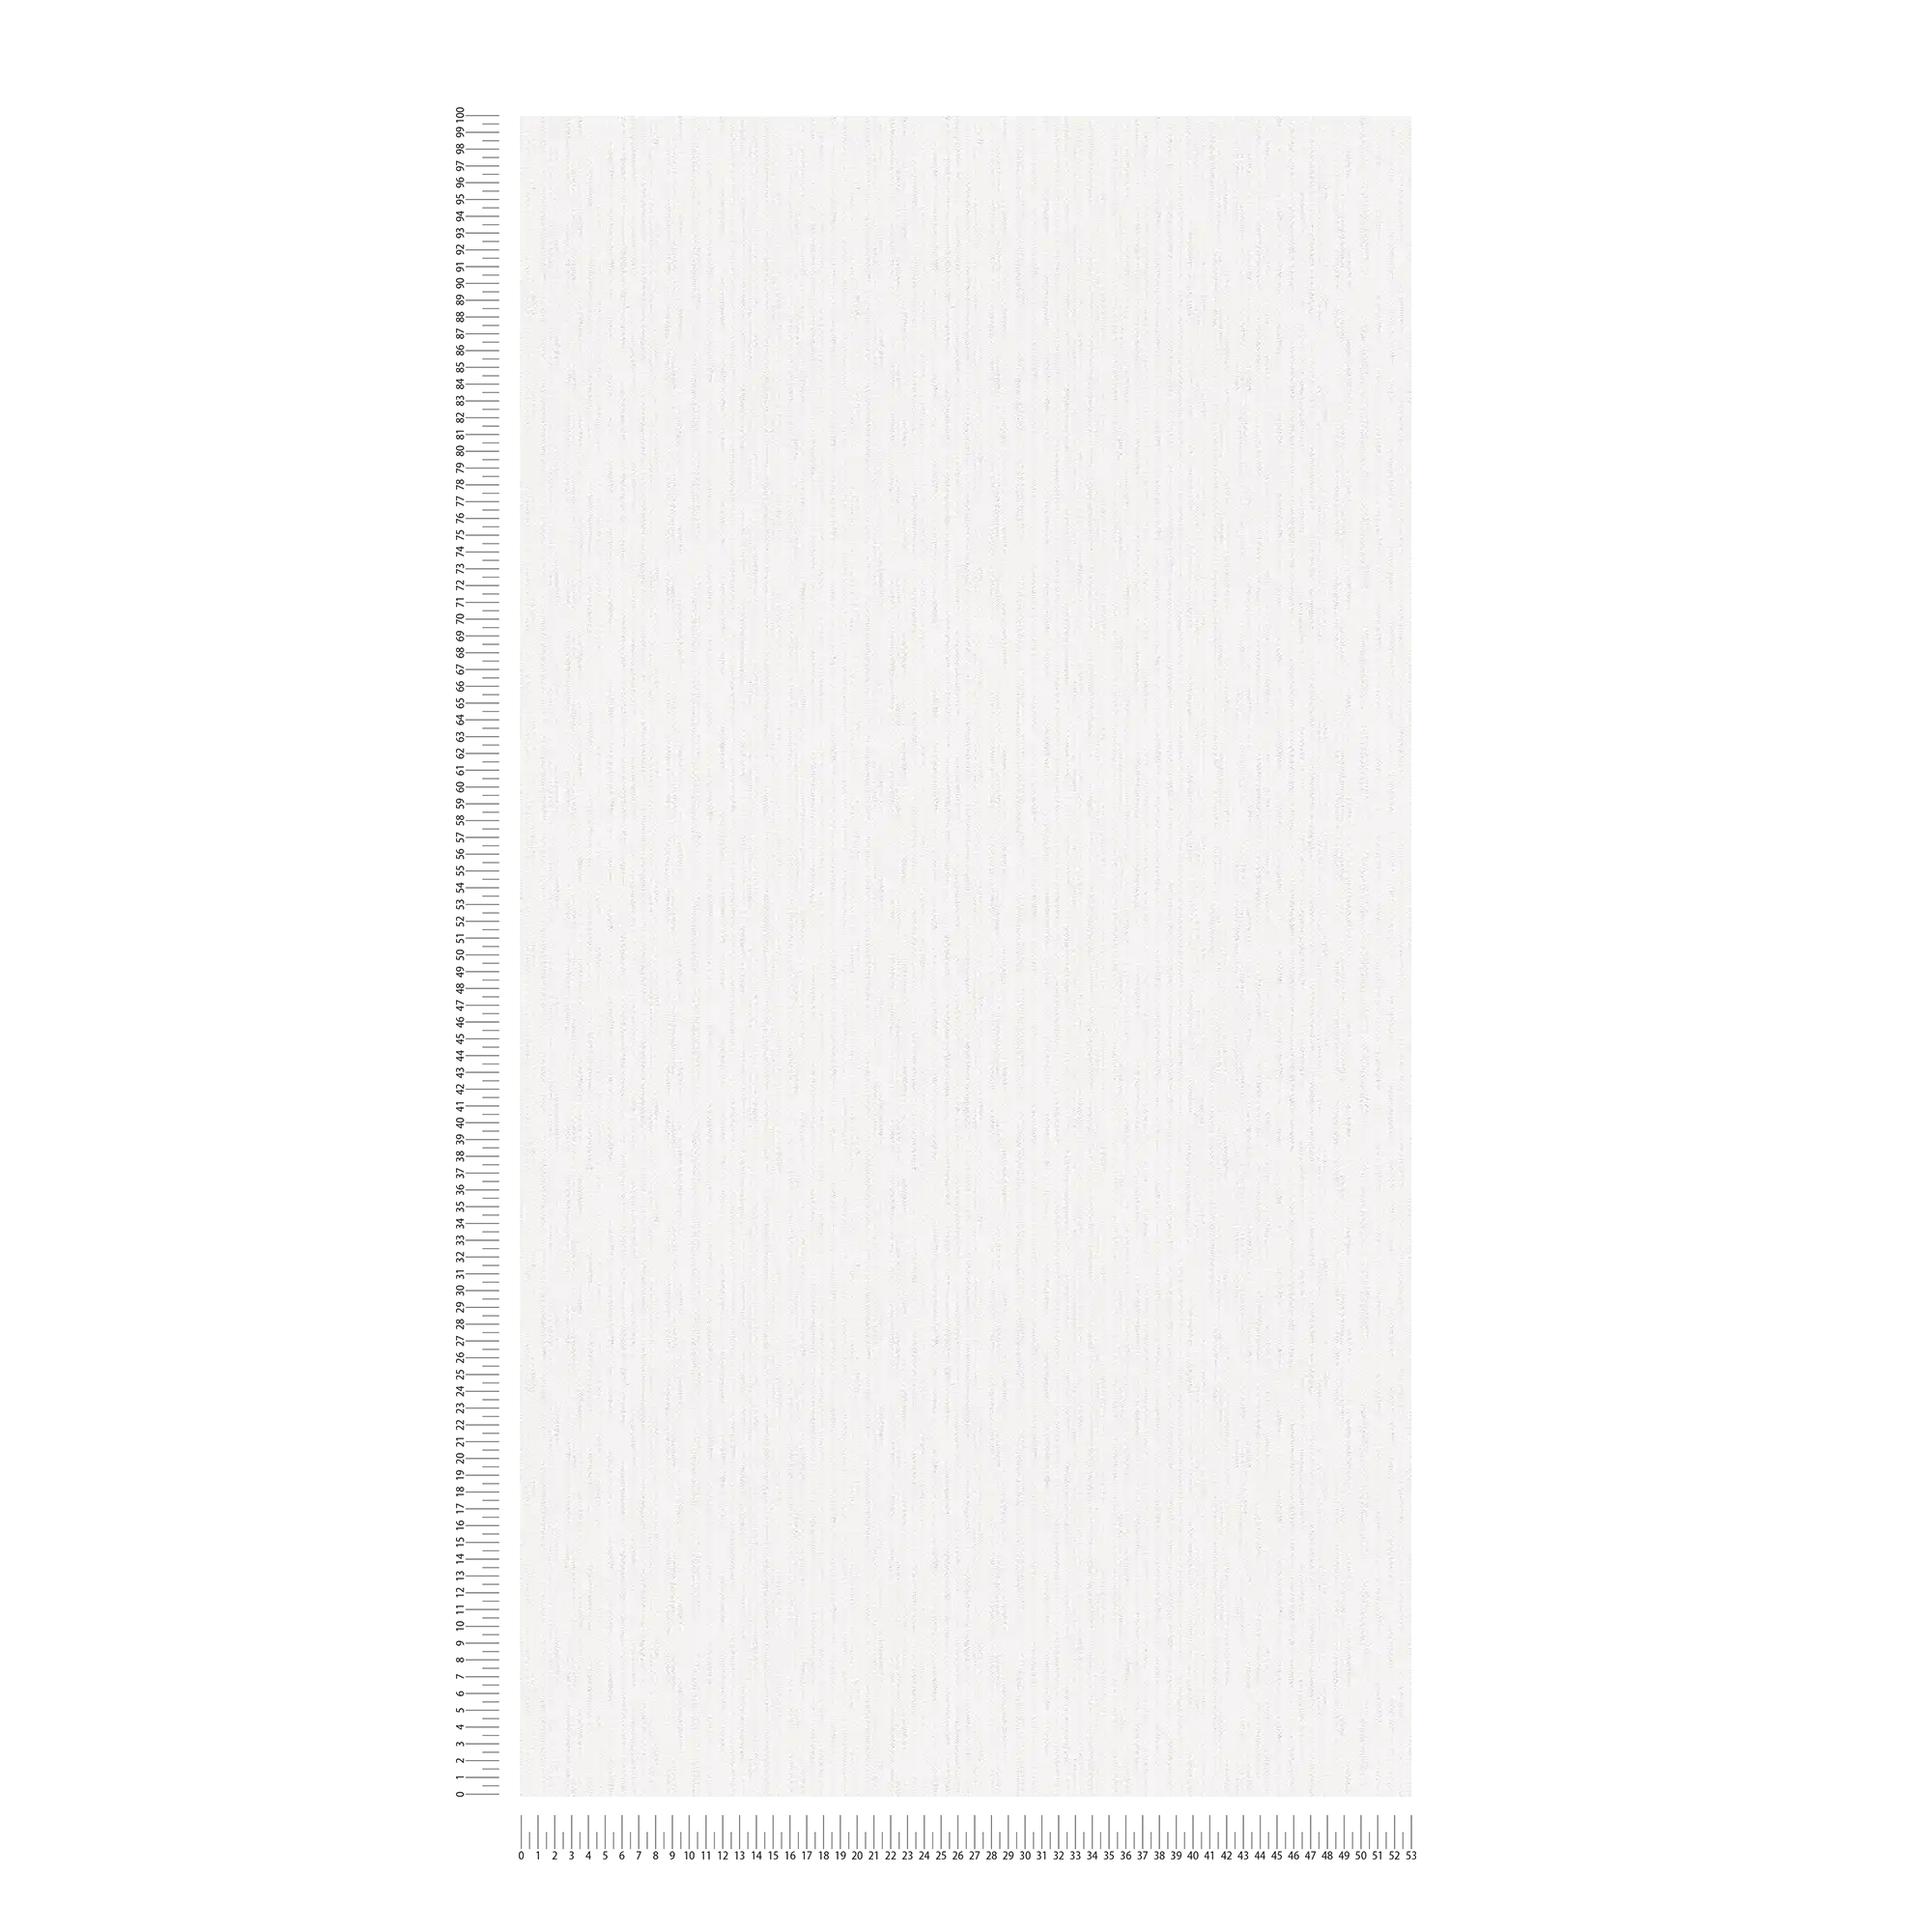             Reinweiße Papiertapete mit Textilstruktur im Retro Look – Weiß
        